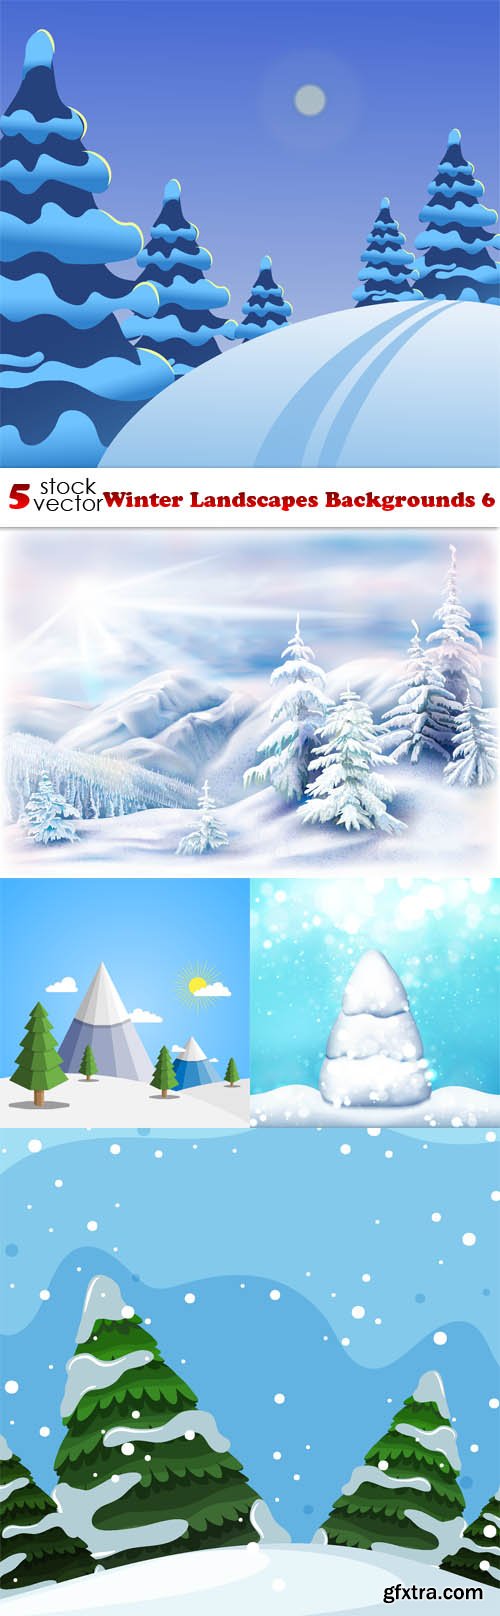 Vectors - Winter Landscapes Backgrounds 6